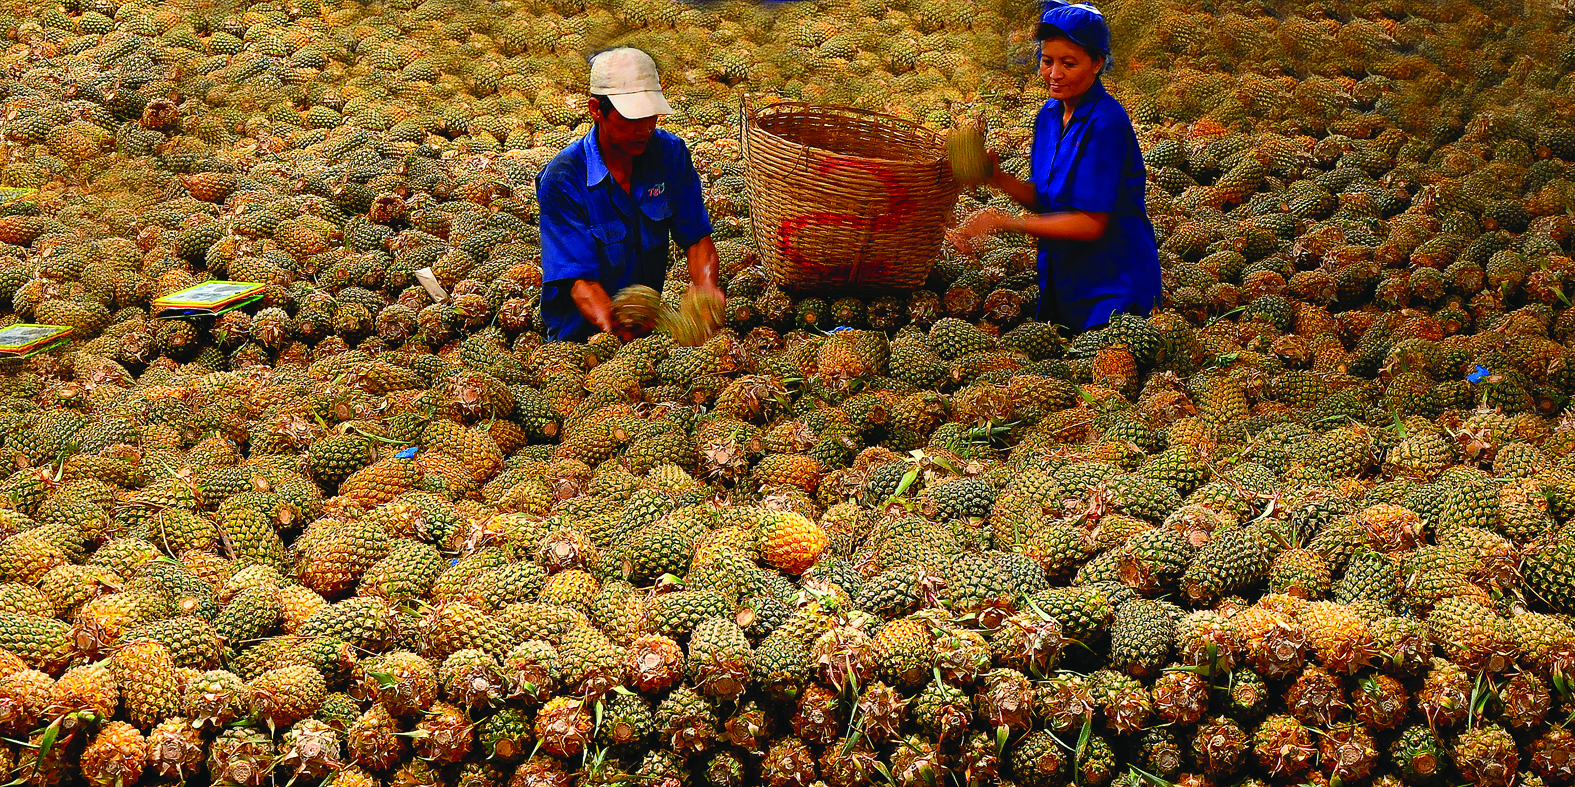 p/Tiền Giang đã hình thành vùng sản xuất nông nghiệp hàng hóa tập trung quy mô lớn. Chẳng hạn như vùng nguyên liệu trái khóm tại huyện Tân Phước.